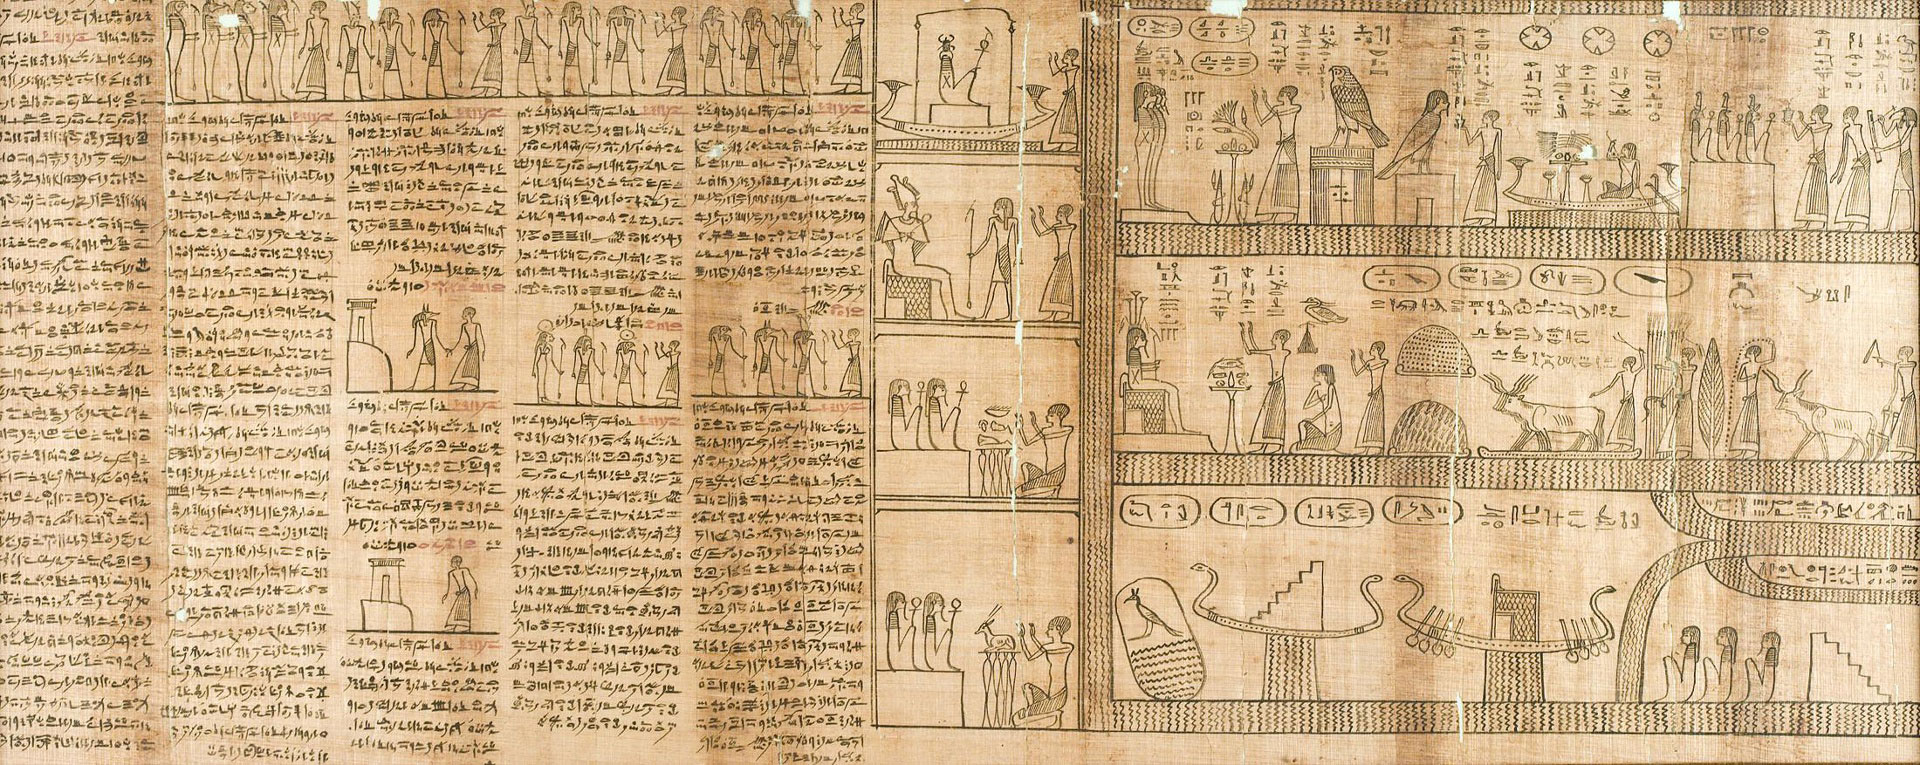 Часть Книги Мертвых жреца Несмина в зале Древнего Египта Эрмитажа, III-I вв. до н.э.